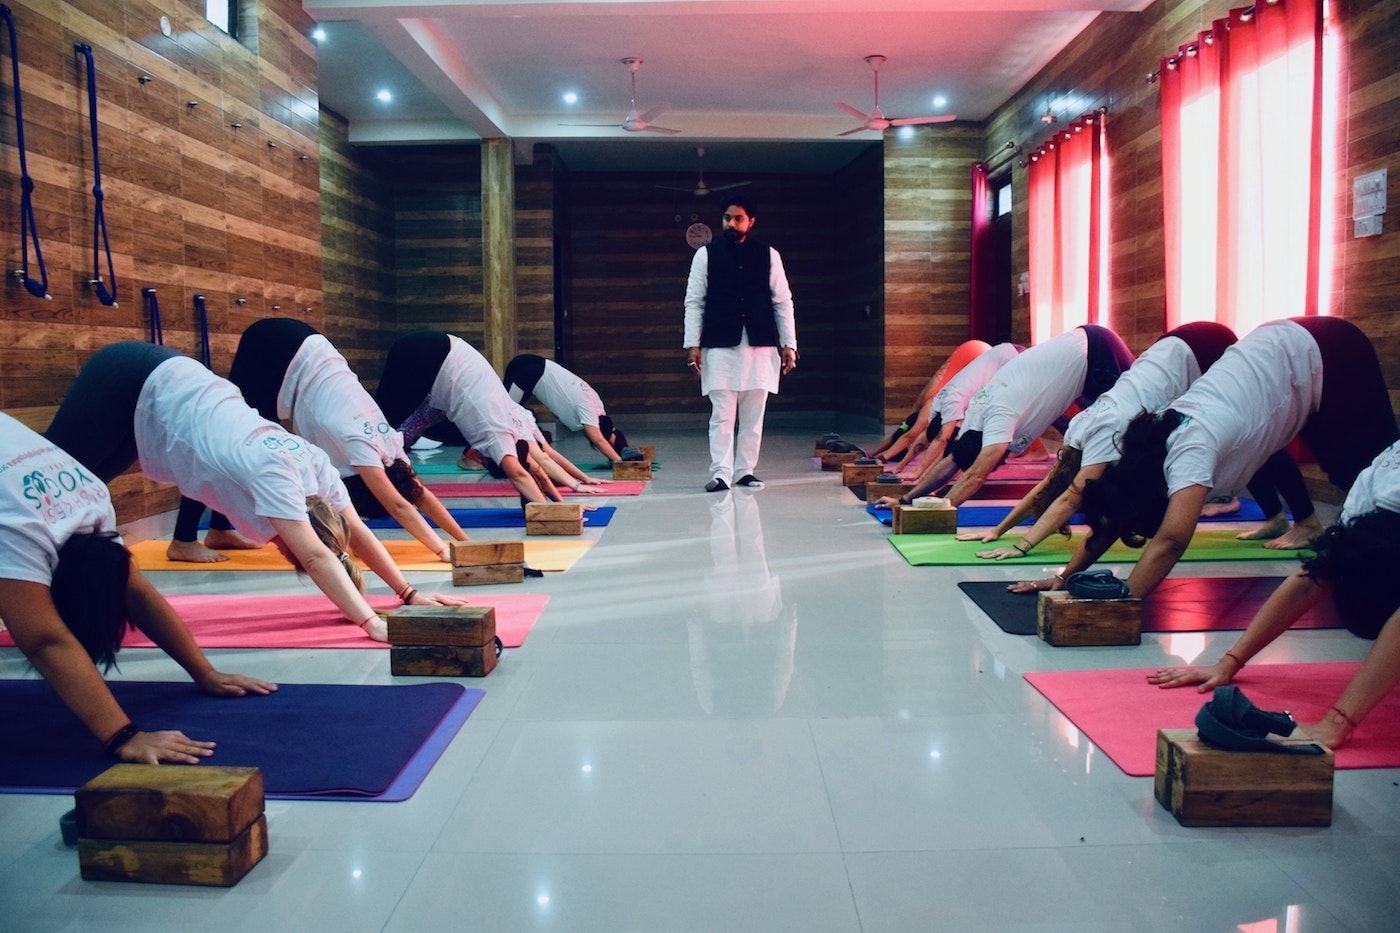 yoga-schools/yogis-yogshala/yogis-yogshala-02.jpg